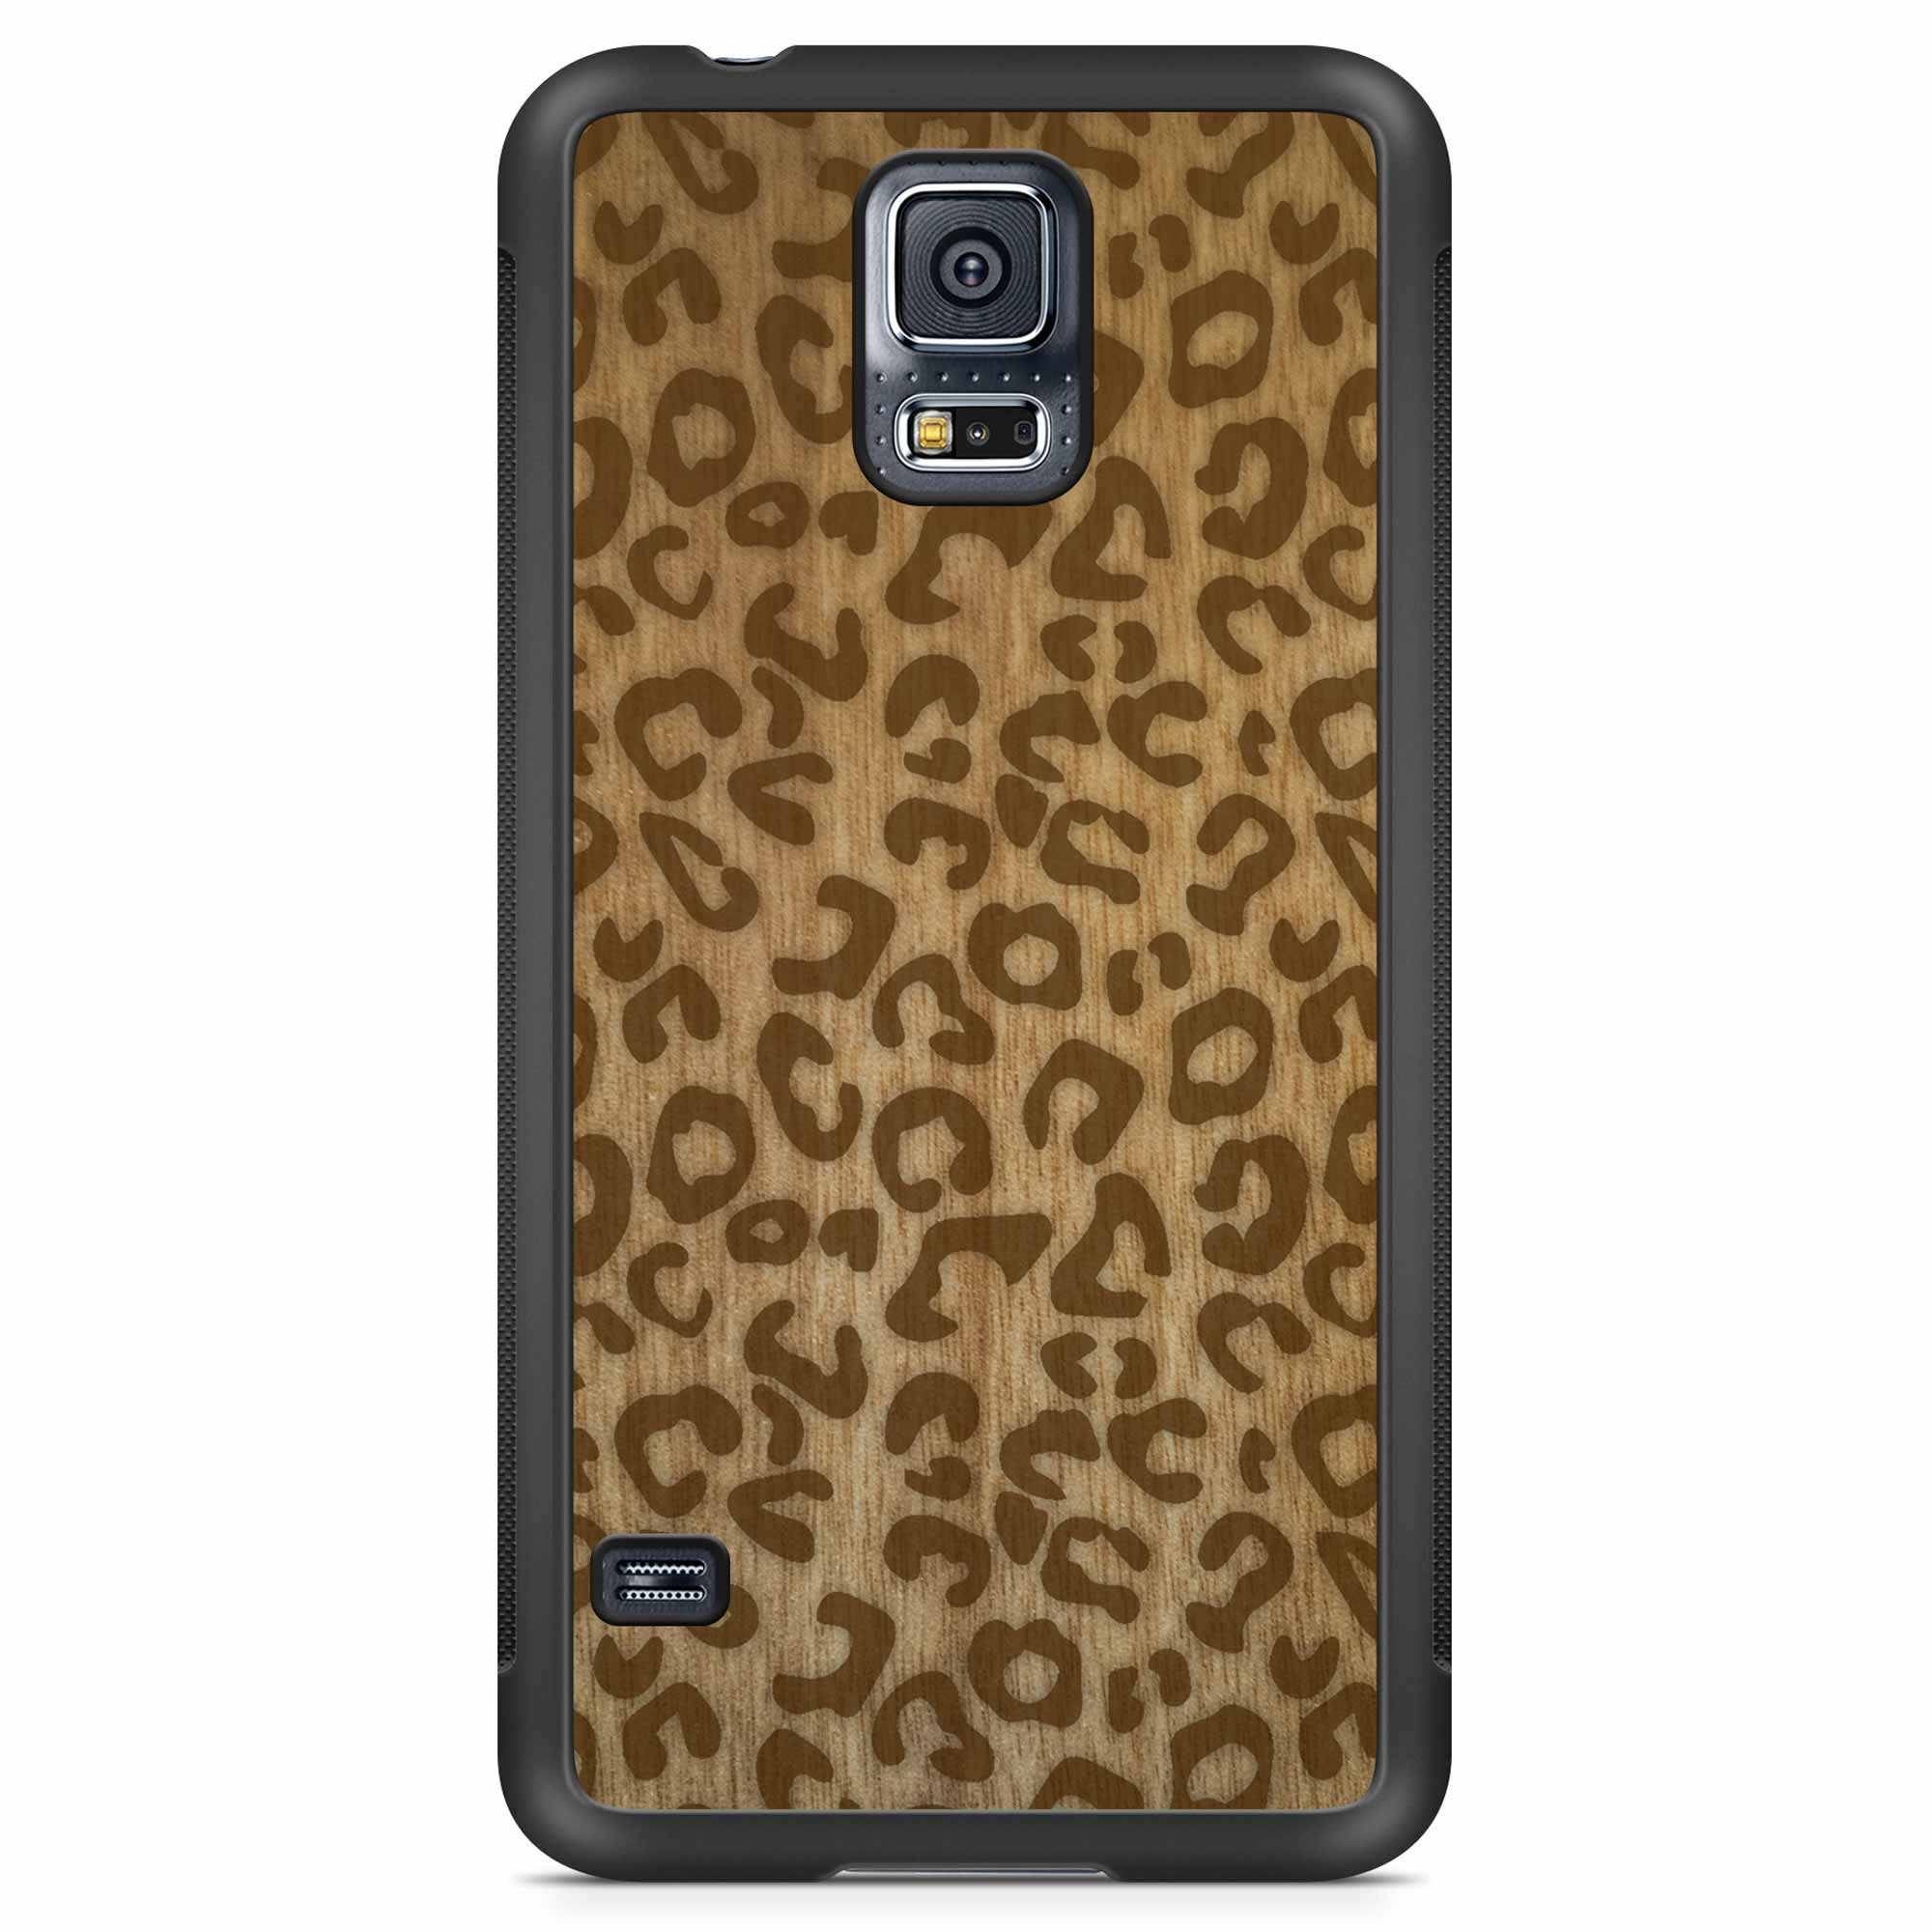 Funda de madera para teléfono Samsung S5 con estampado de guepardo